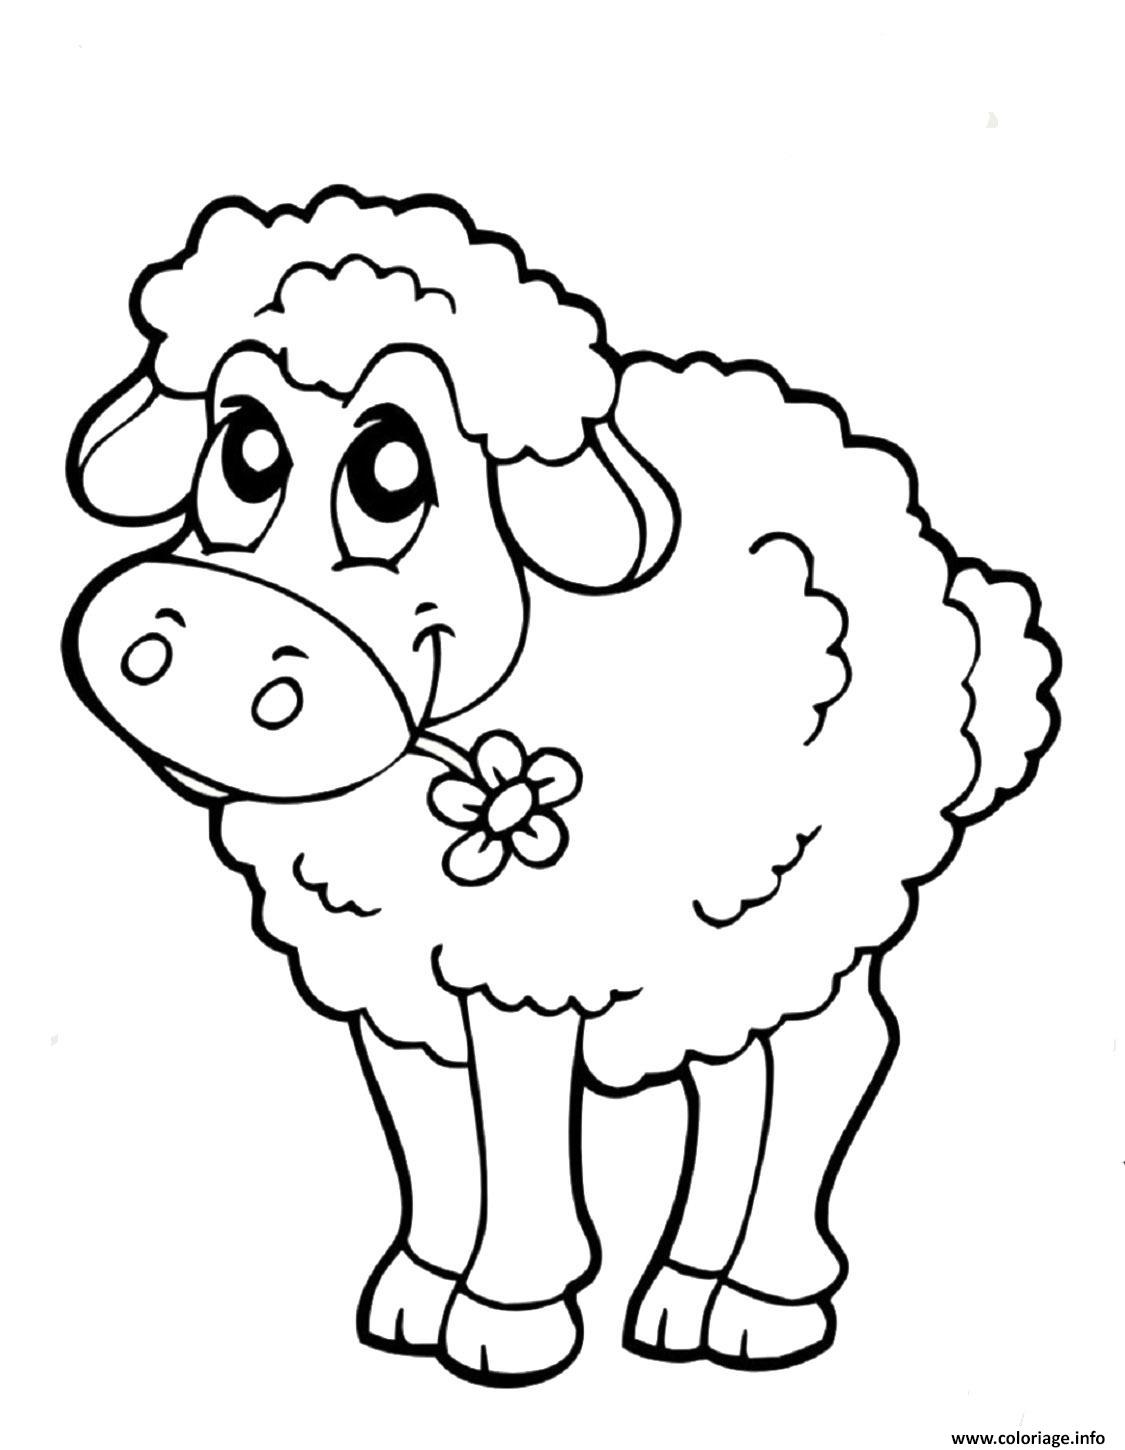 Dessin mouton enfant facile Coloriage Gratuit à Imprimer